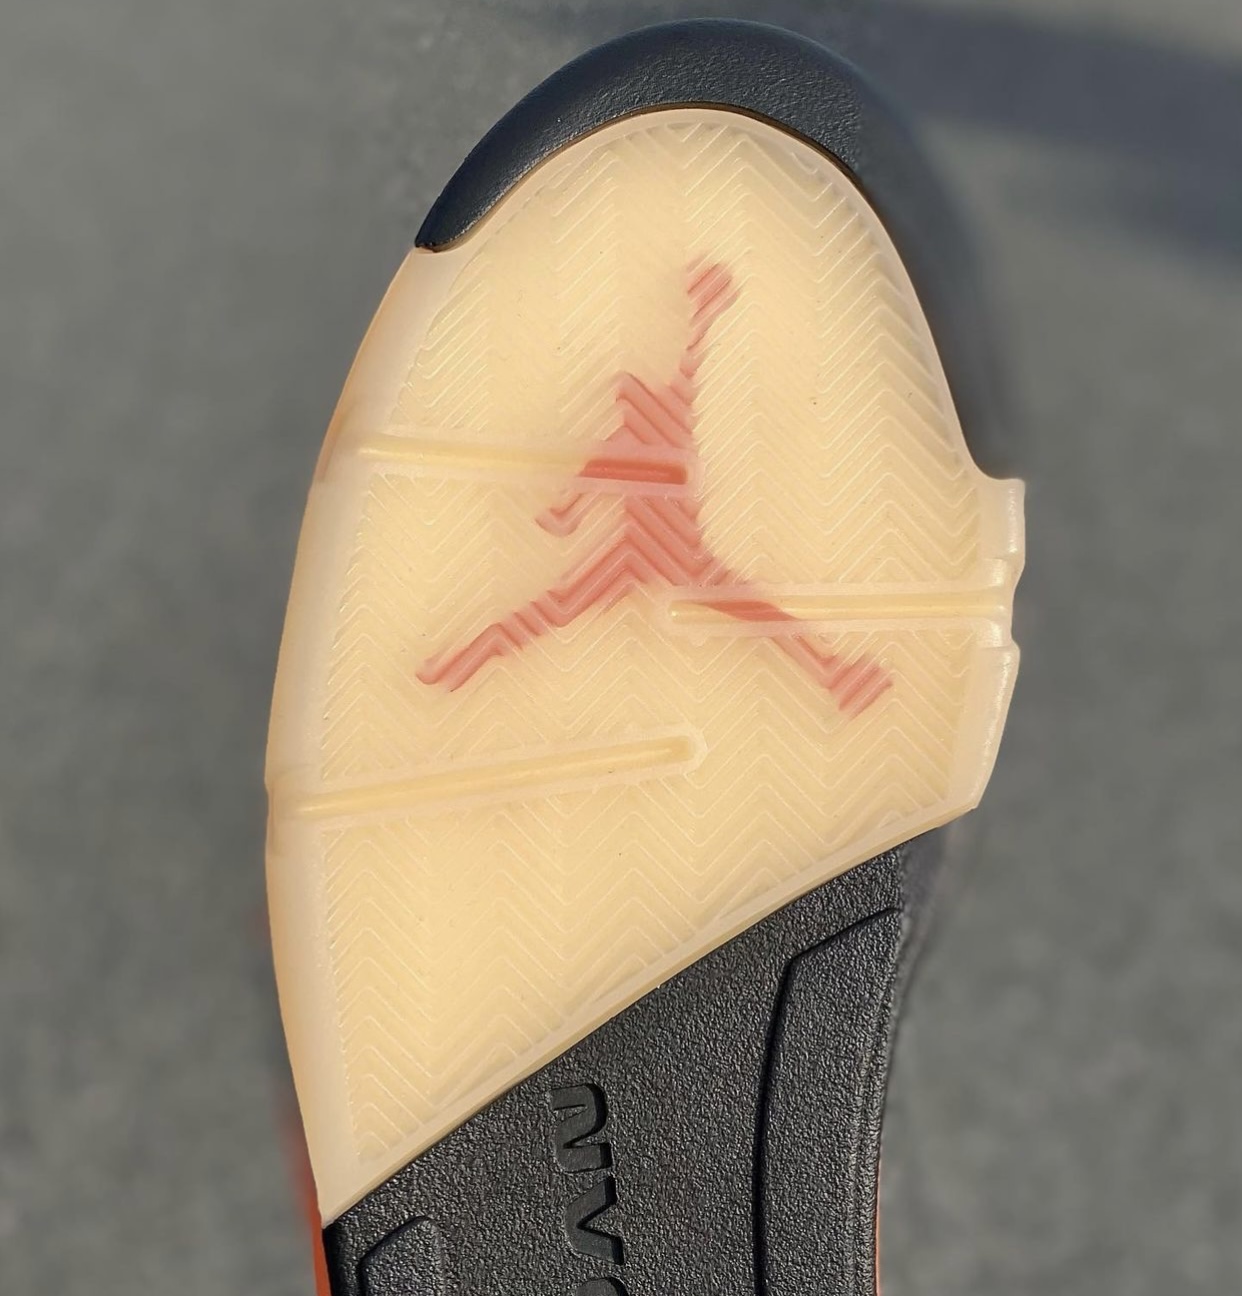 zsneakerheadz, Orange, Nike Air, NIKE, Jordan 5, Jordan, Air Jordan 5 “Shattered Backboard”, Air Jordan 5